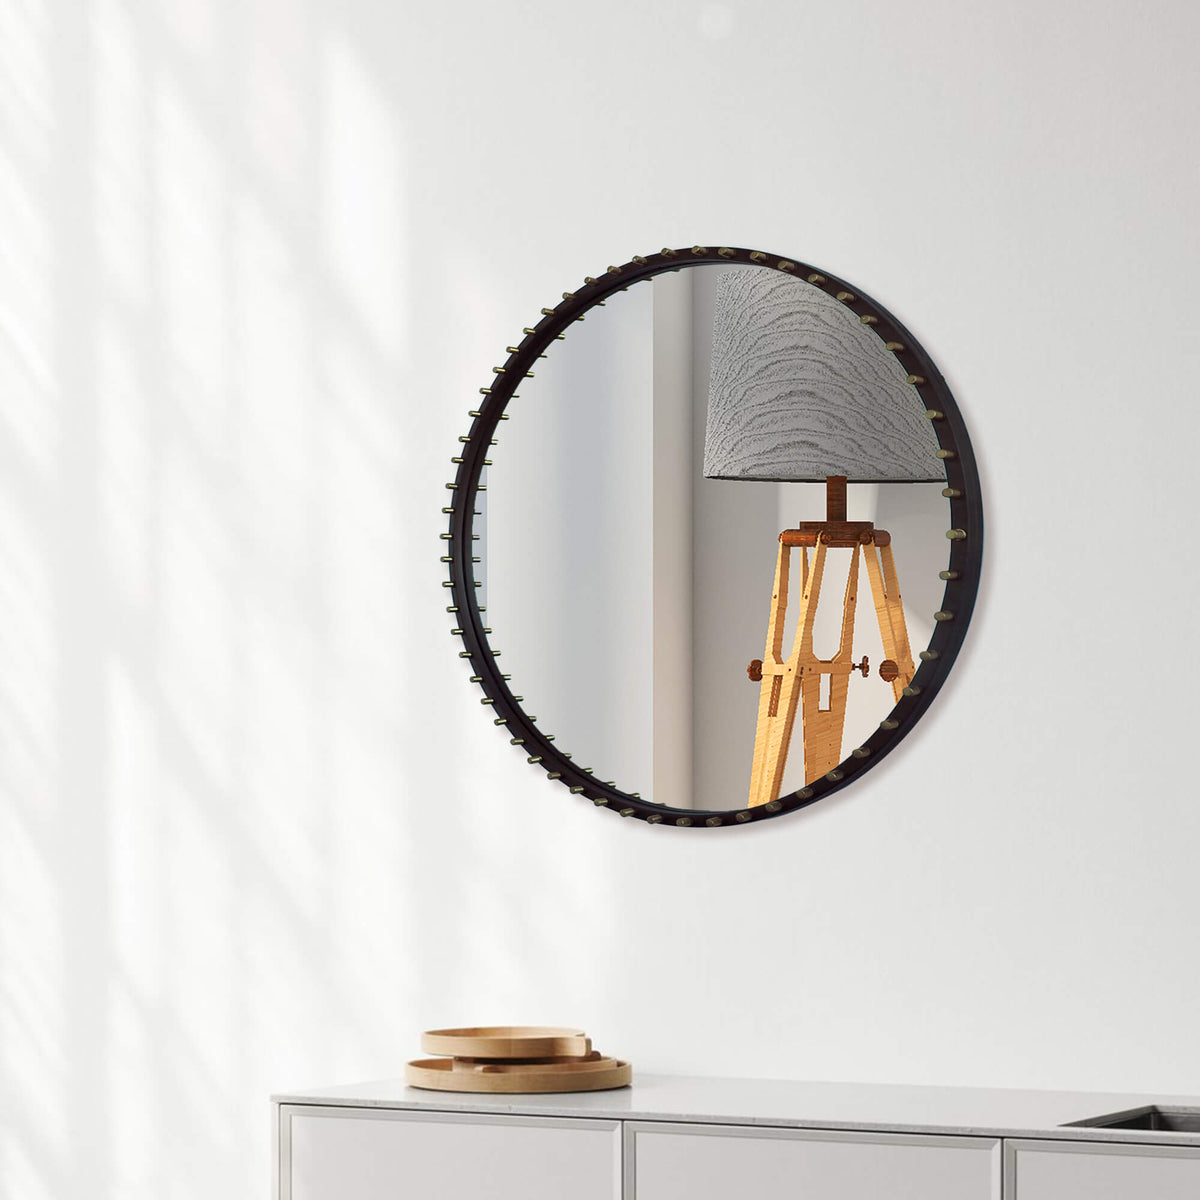 ammann raumgestaltung - frost spiegel rund 4131 white circle mirror